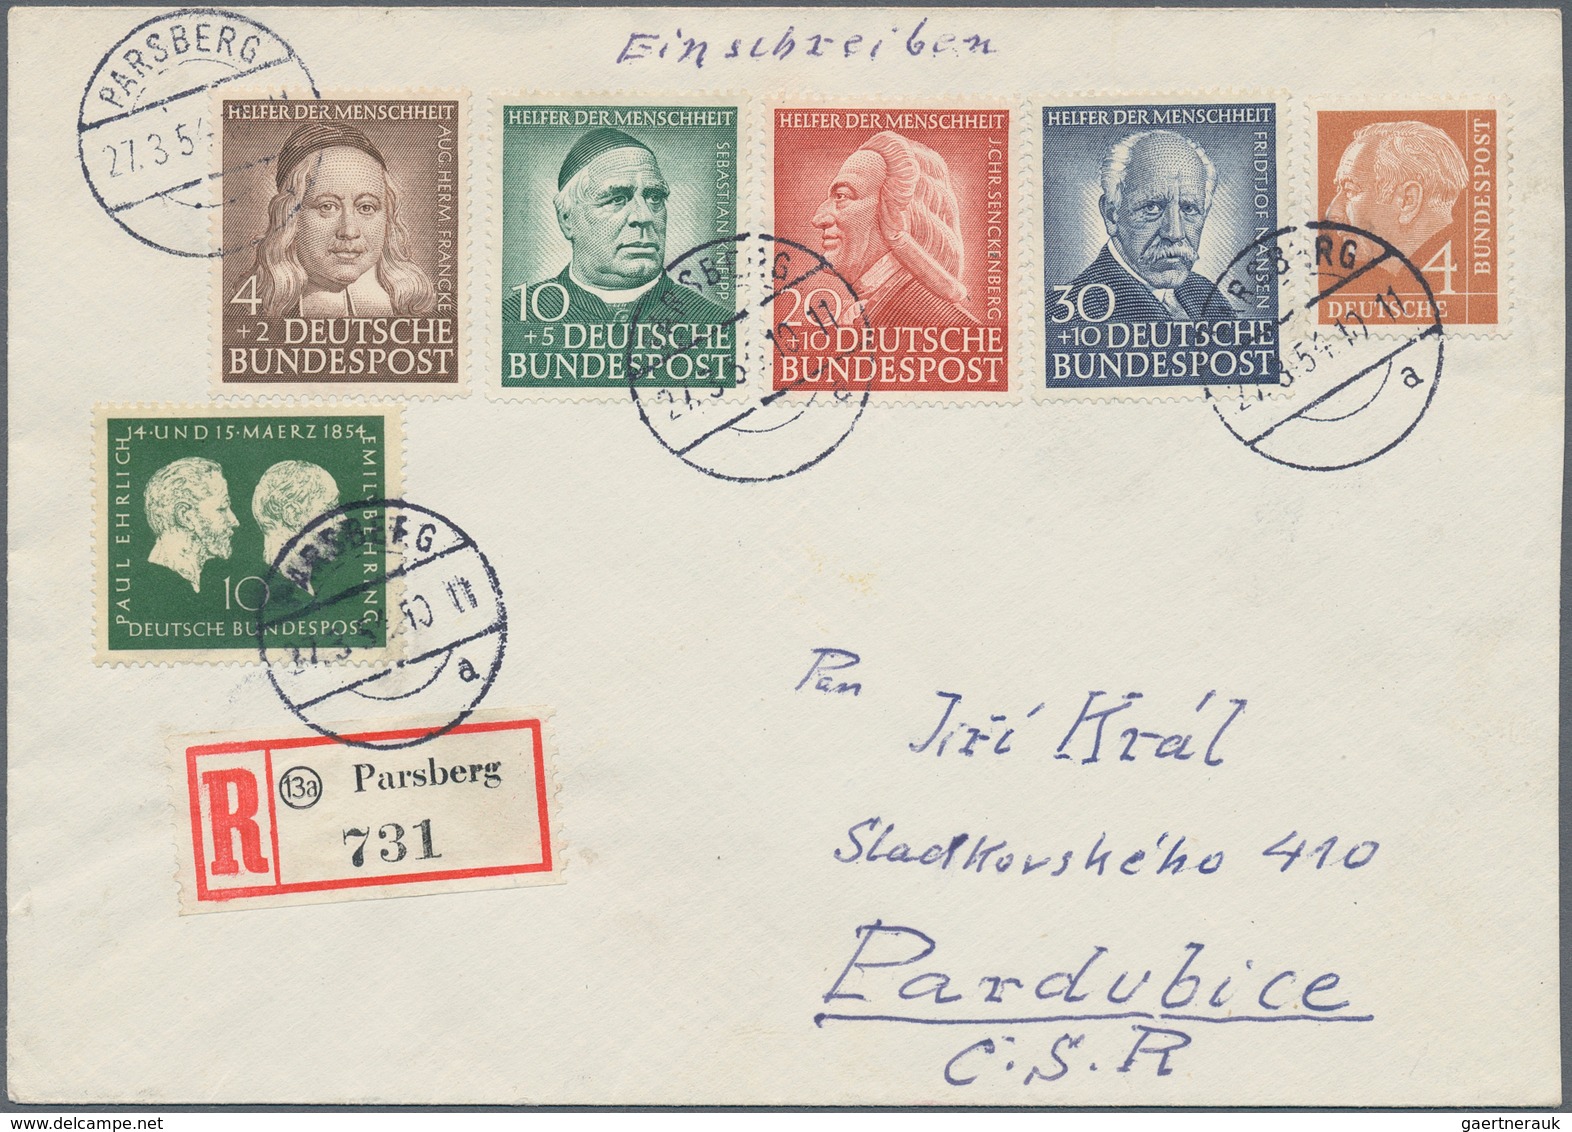 Deutschland nach 1945: 1948/1960, Bizone bis Bund, umfangreiche Sammlung von über 500 Belegen mit za